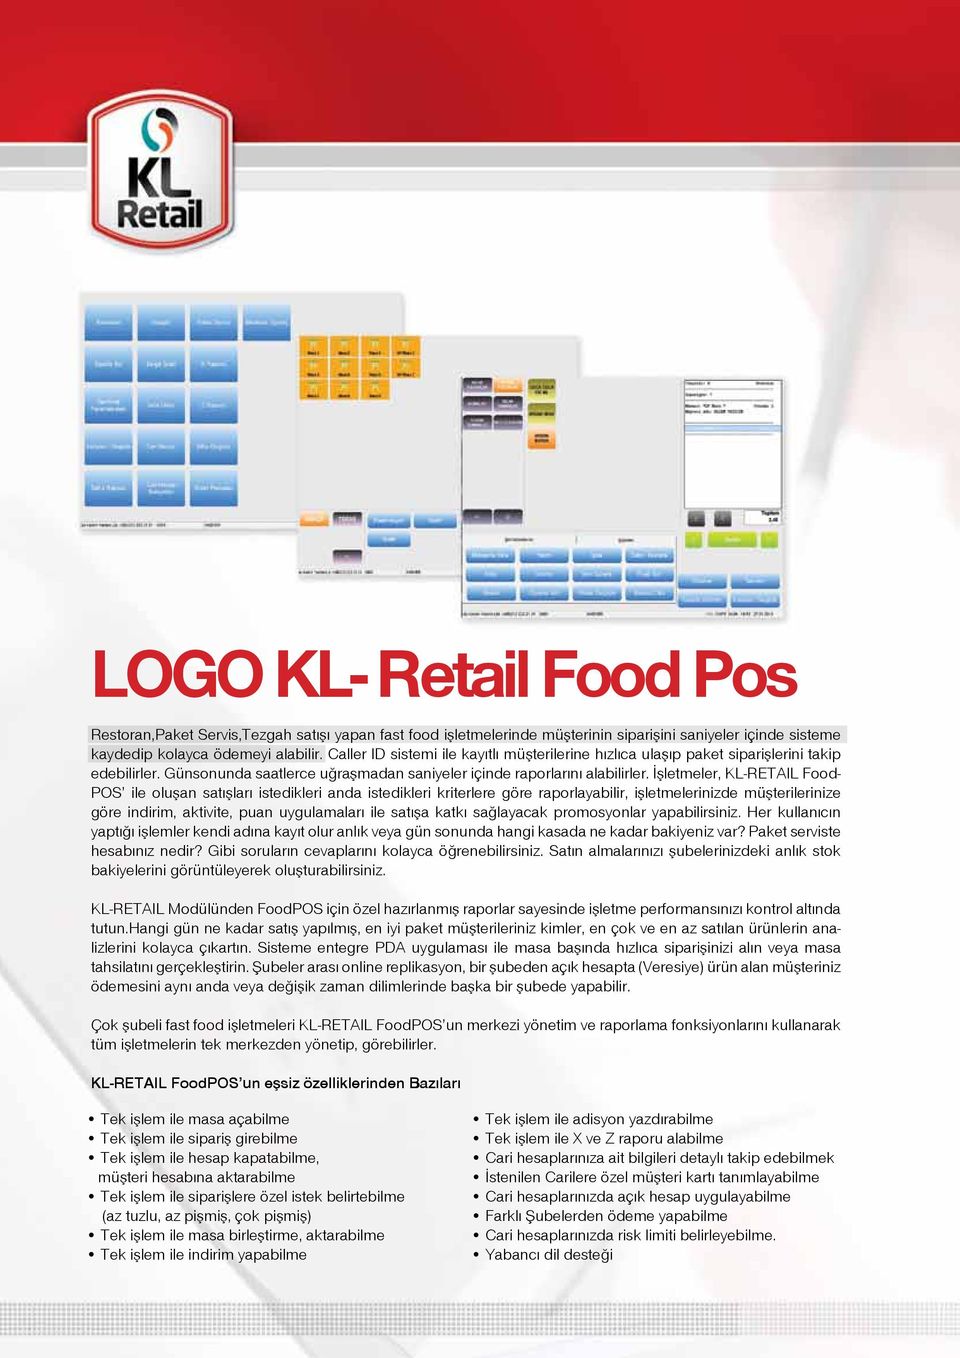 İşletmeler, KL-RETAIL Food- POS ile oluşan satışları istedikleri anda istedikleri kriterlere göre raporlayabilir, işletmelerinizde müşterilerinize göre indirim, aktivite, puan uygulamaları ile satışa